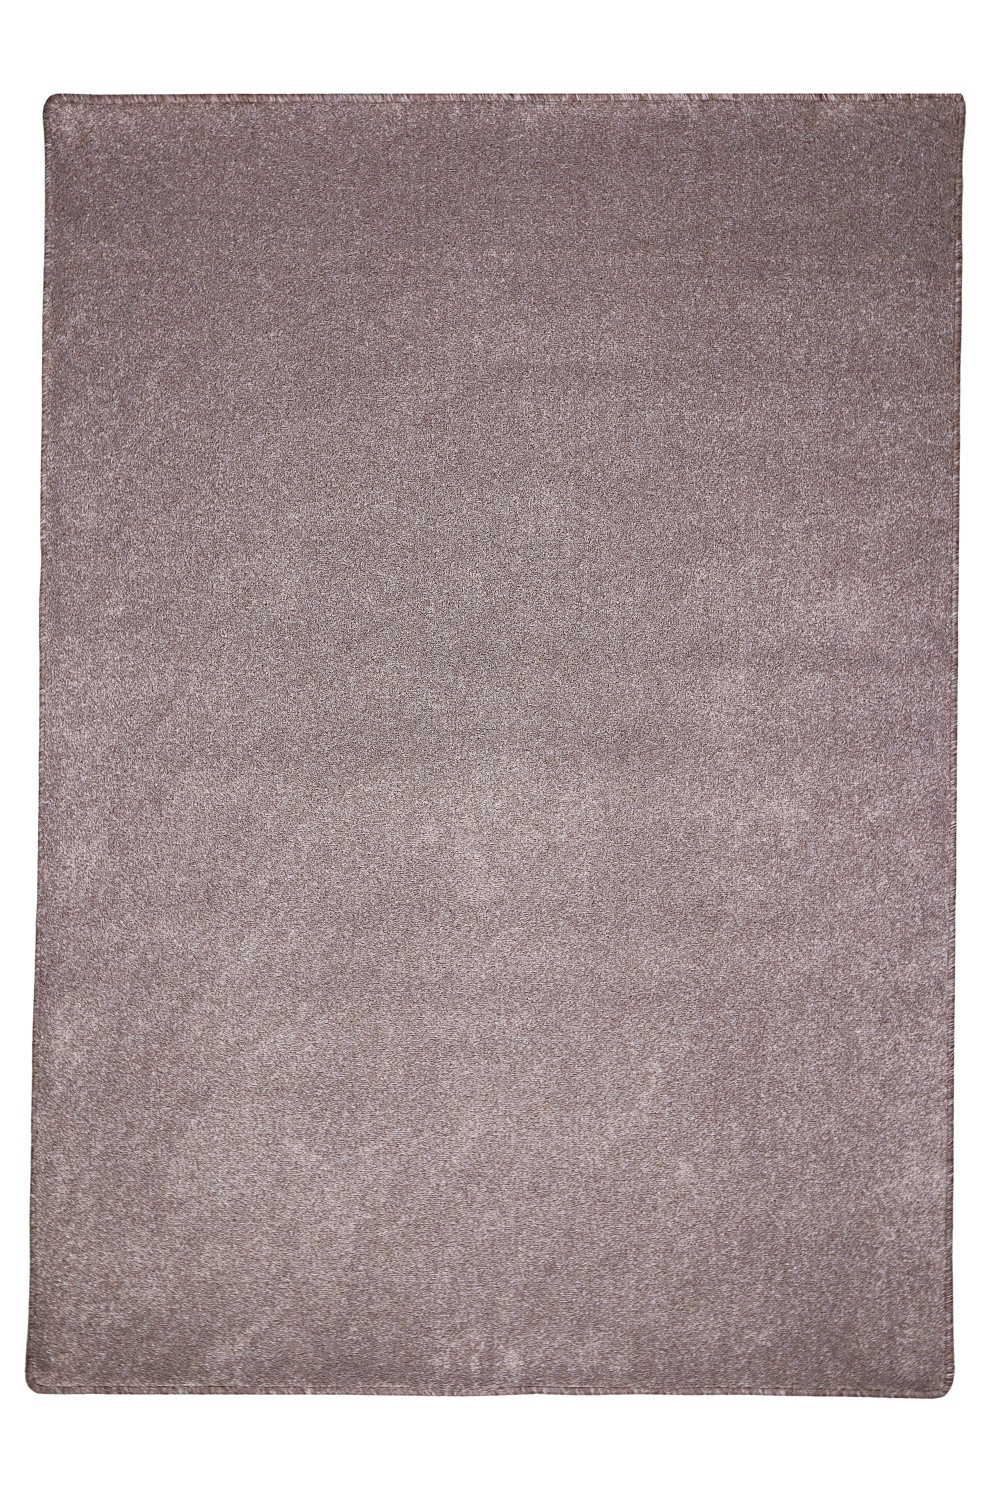 Levně Vopi koberce Kusový koberec Apollo Soft béžový - 200x250 cm